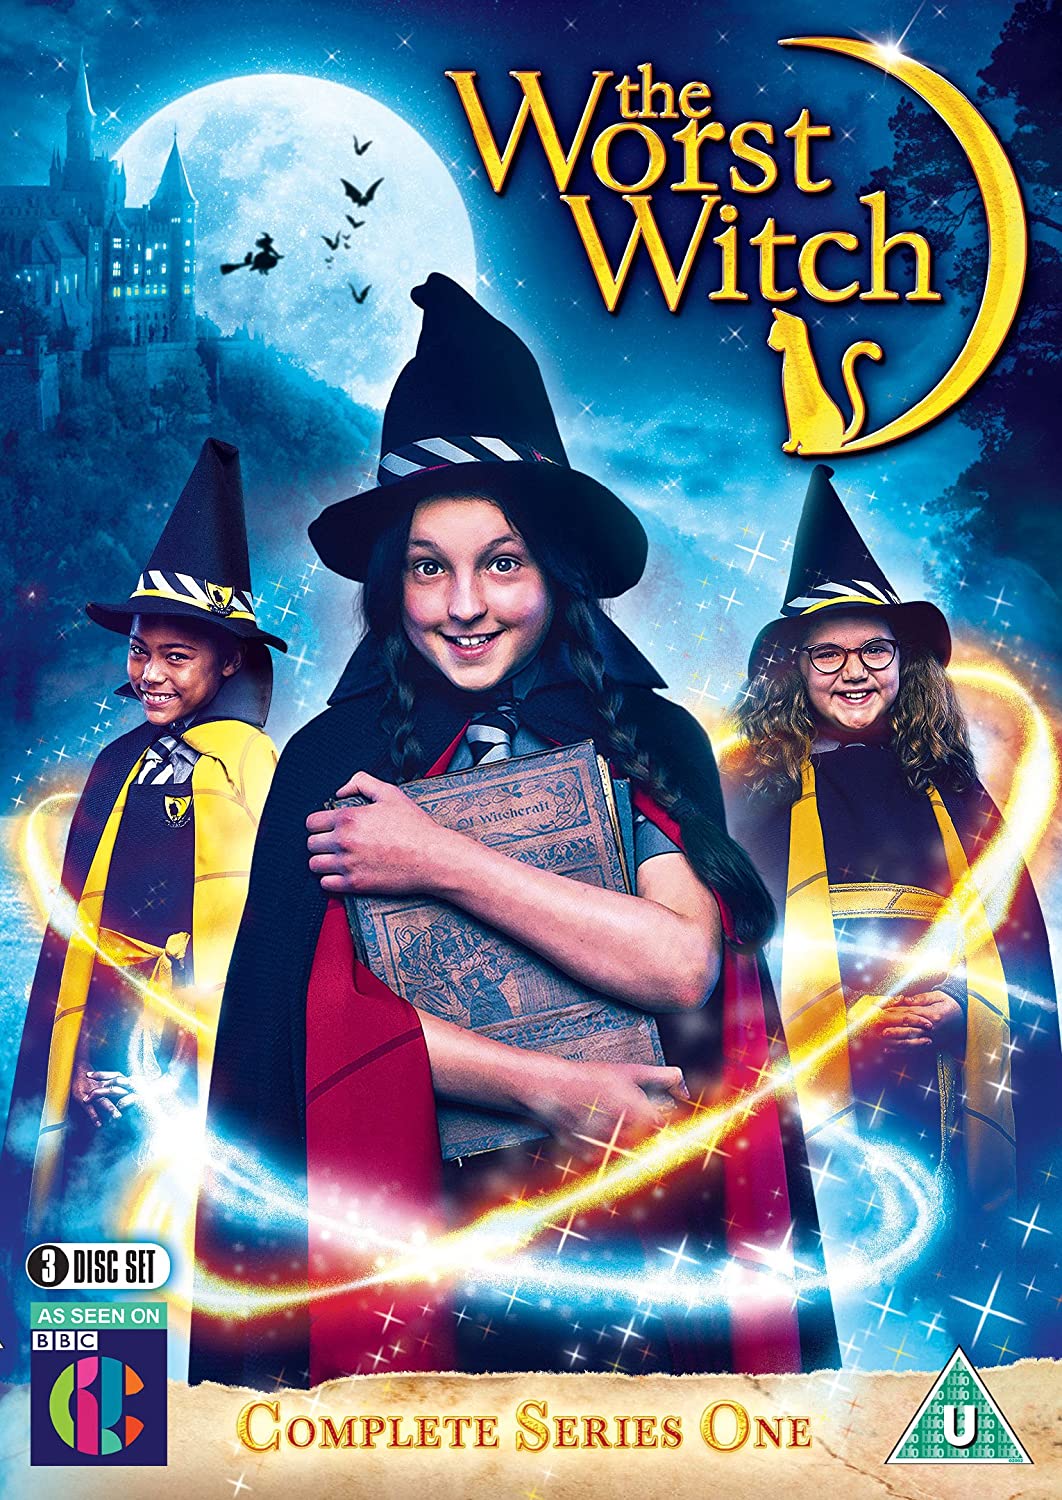 ดูหนังออนไลน์ฟรี The Worst Witch Season 3 (2019) โอมเพี้ยง! แม่มดน้อยสู้ตาย ซีซั่น 3 ตอนที่ 1